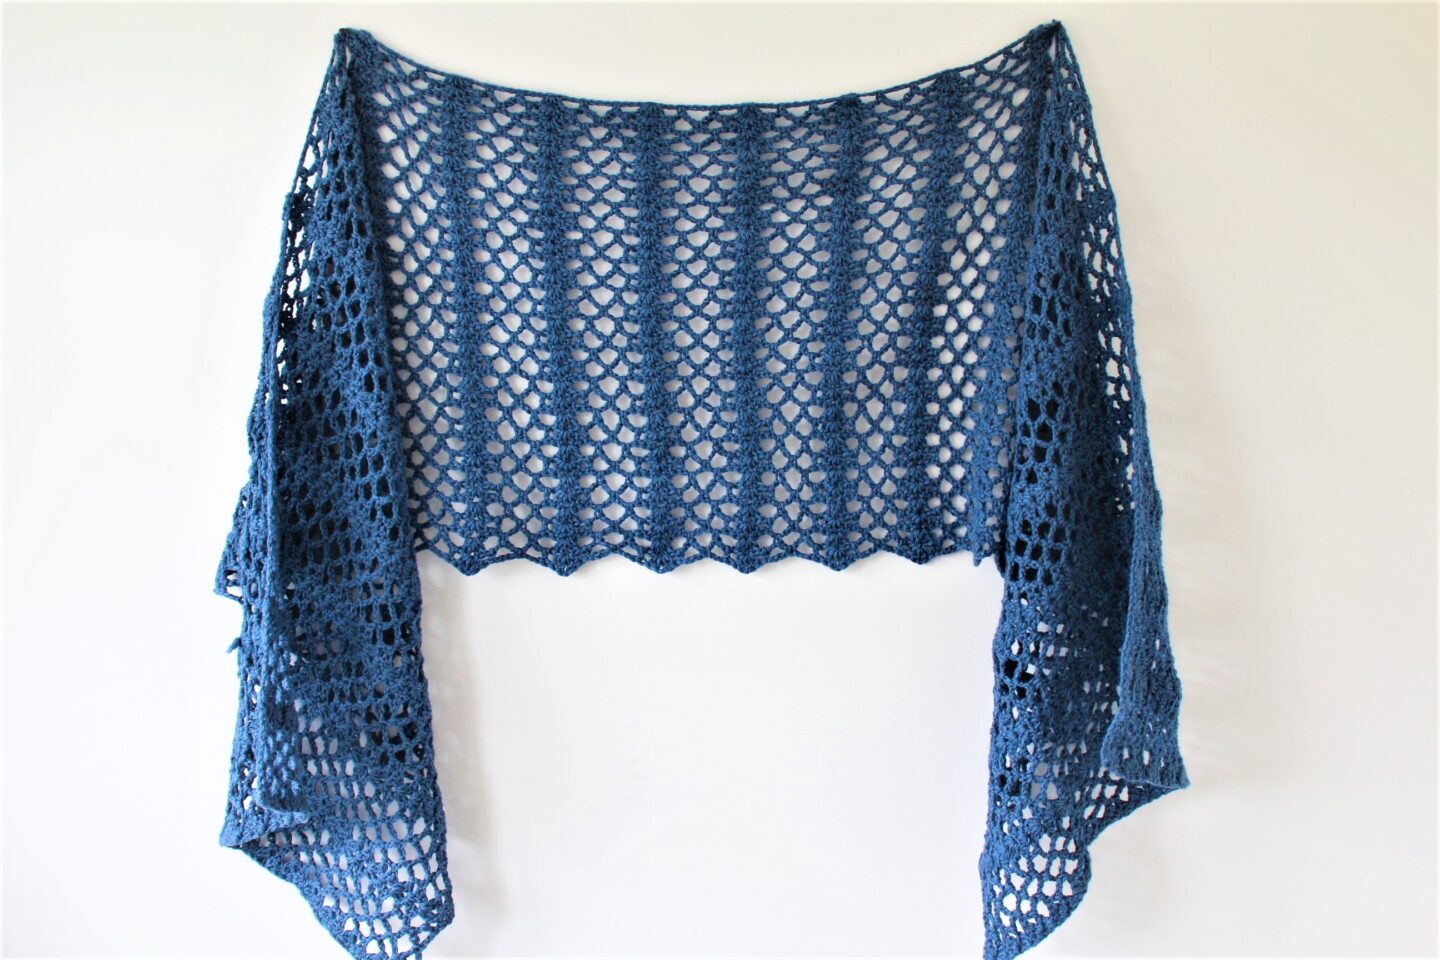 Beginner friendly free crochet pattern